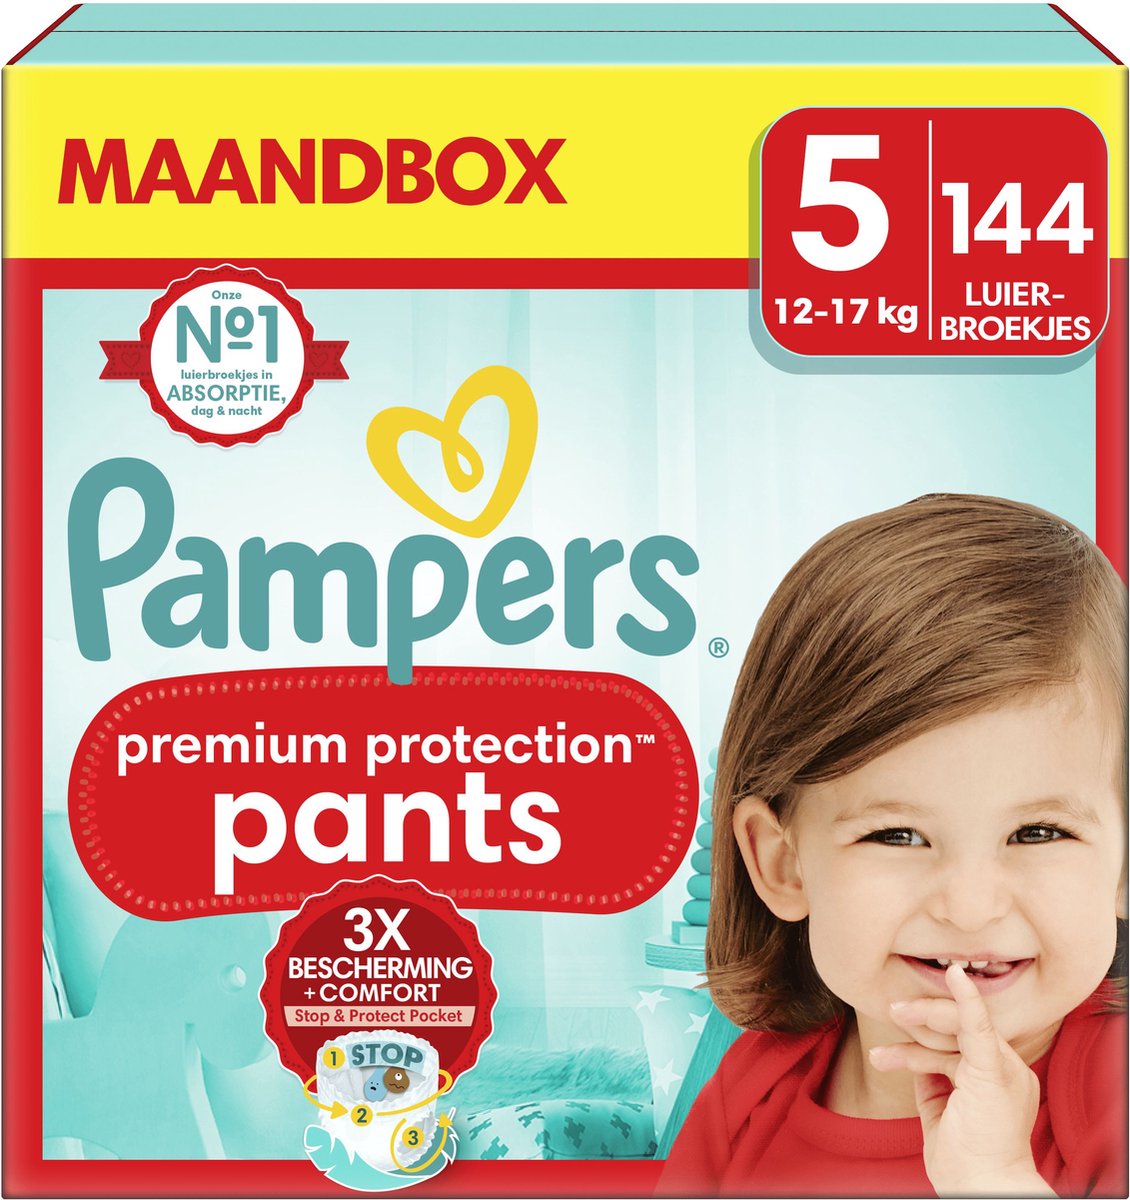 Pampers Premium Protection Pants - Maat 5 (12kg-17kg) - 144 Luiers - Maandbox - Pampers